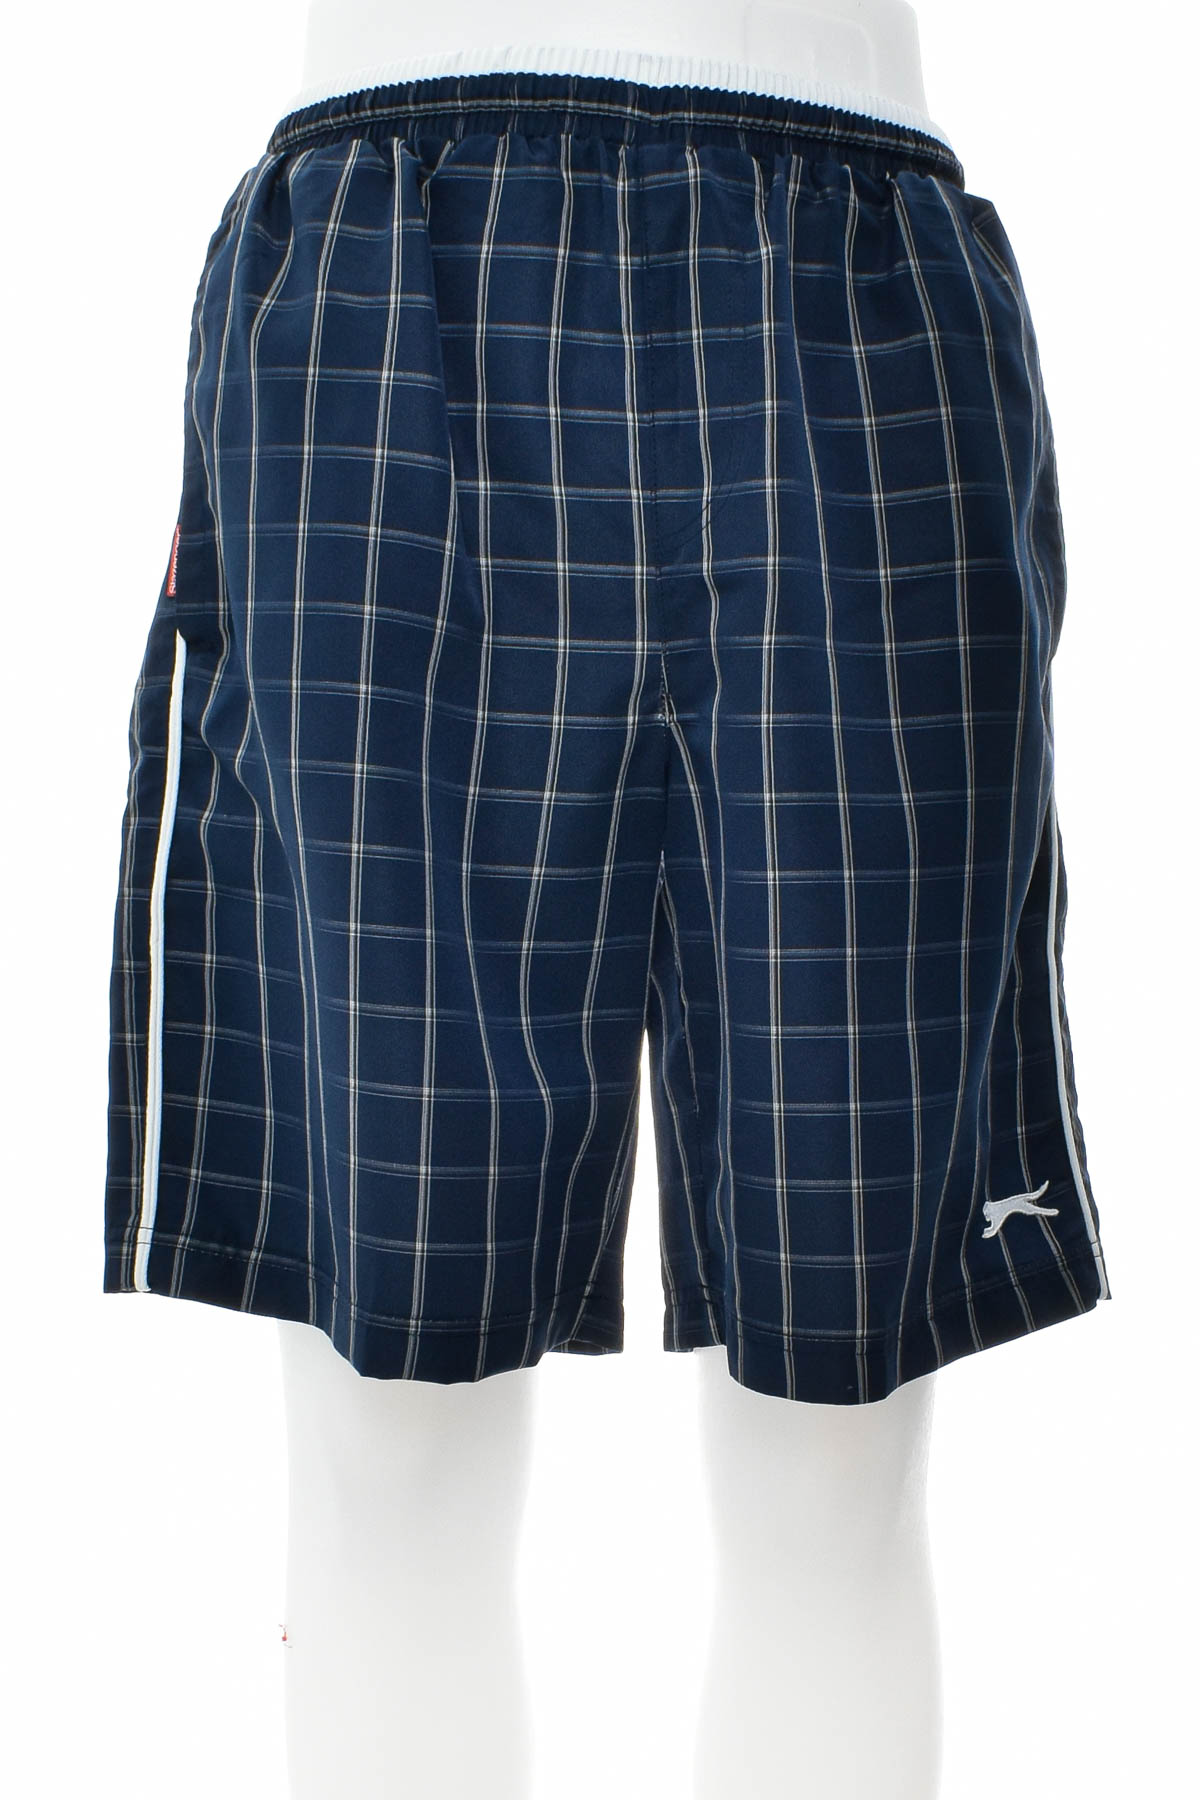 Men's shorts - Slazenger - 0